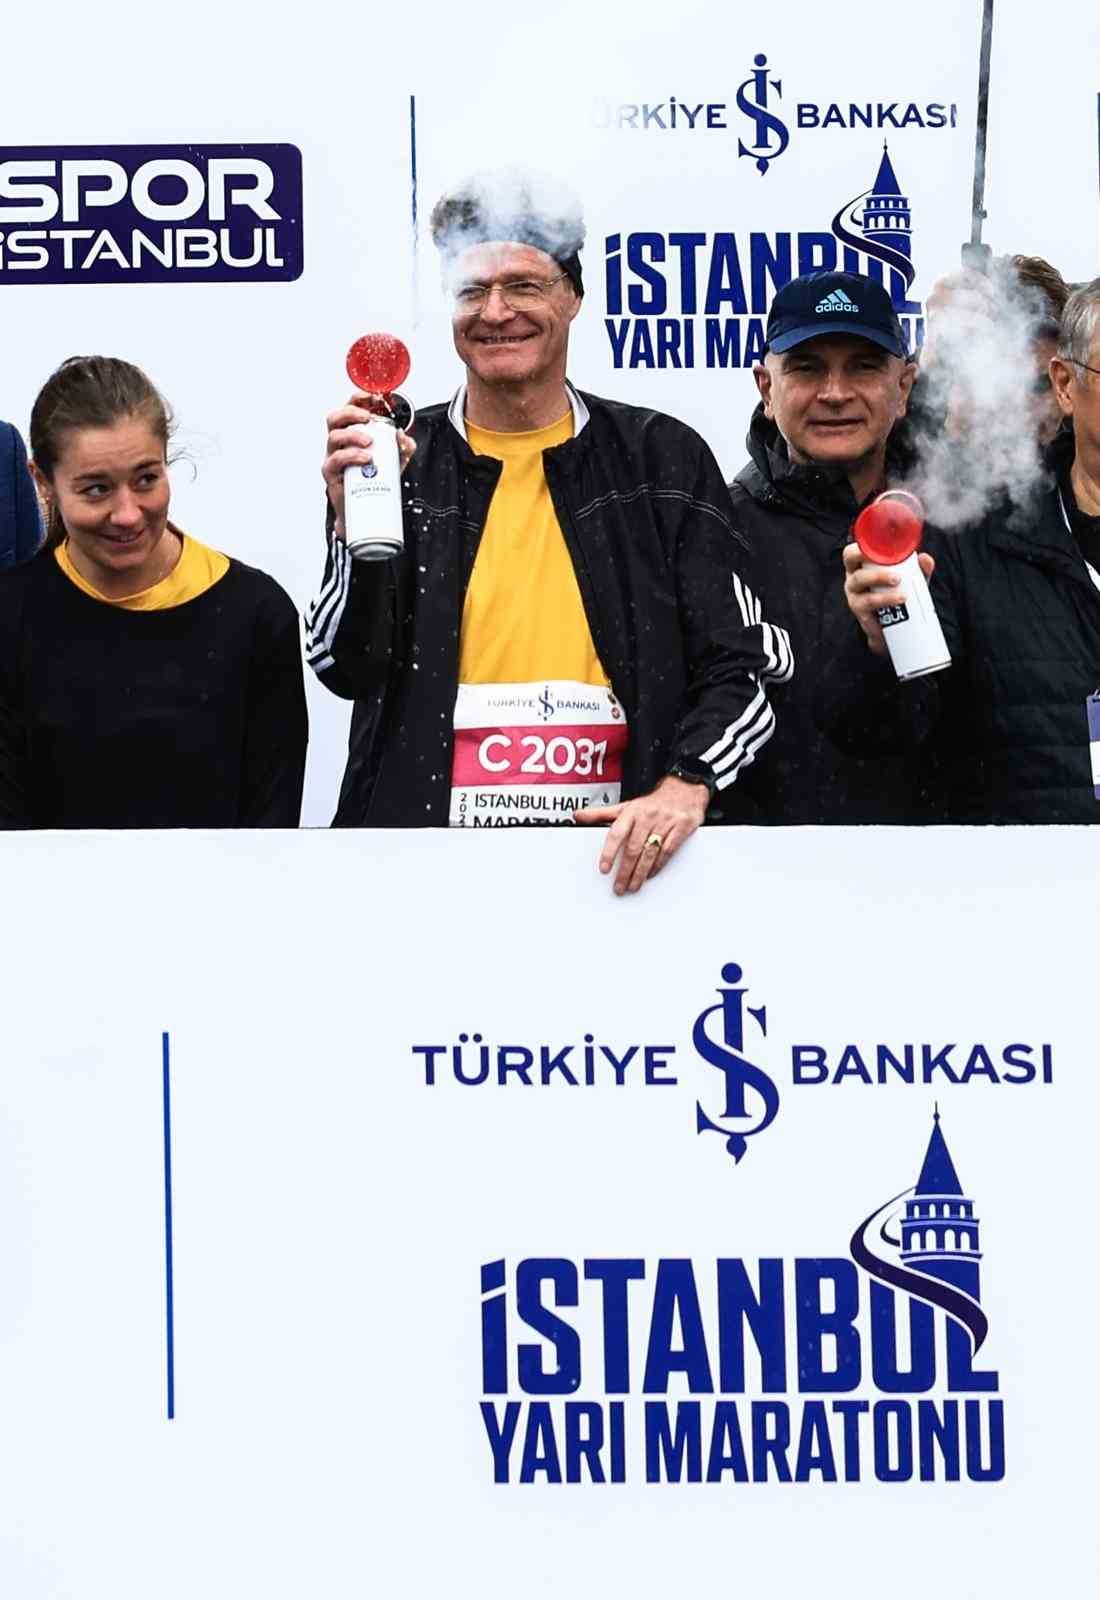 ab buyukelcisi turkiye delegasyon baskani istanbul yari maratonuna katildi 2